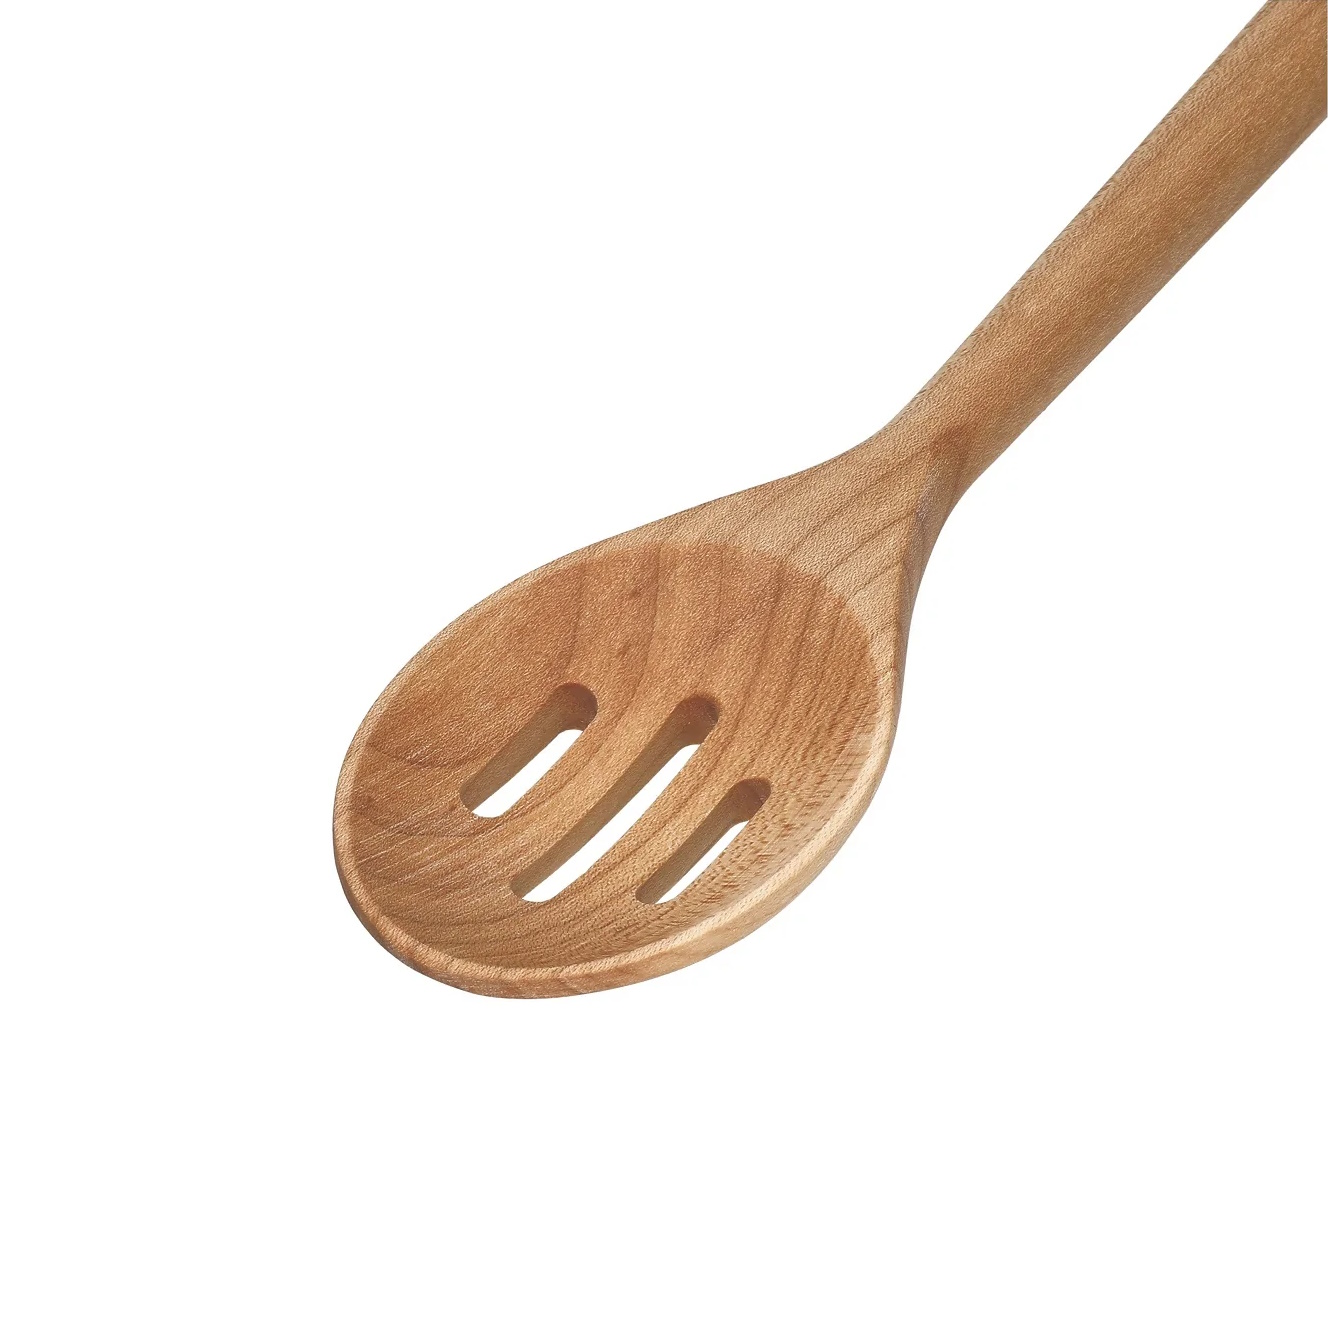 KitchenAid Maple Wood Slotted Spoon